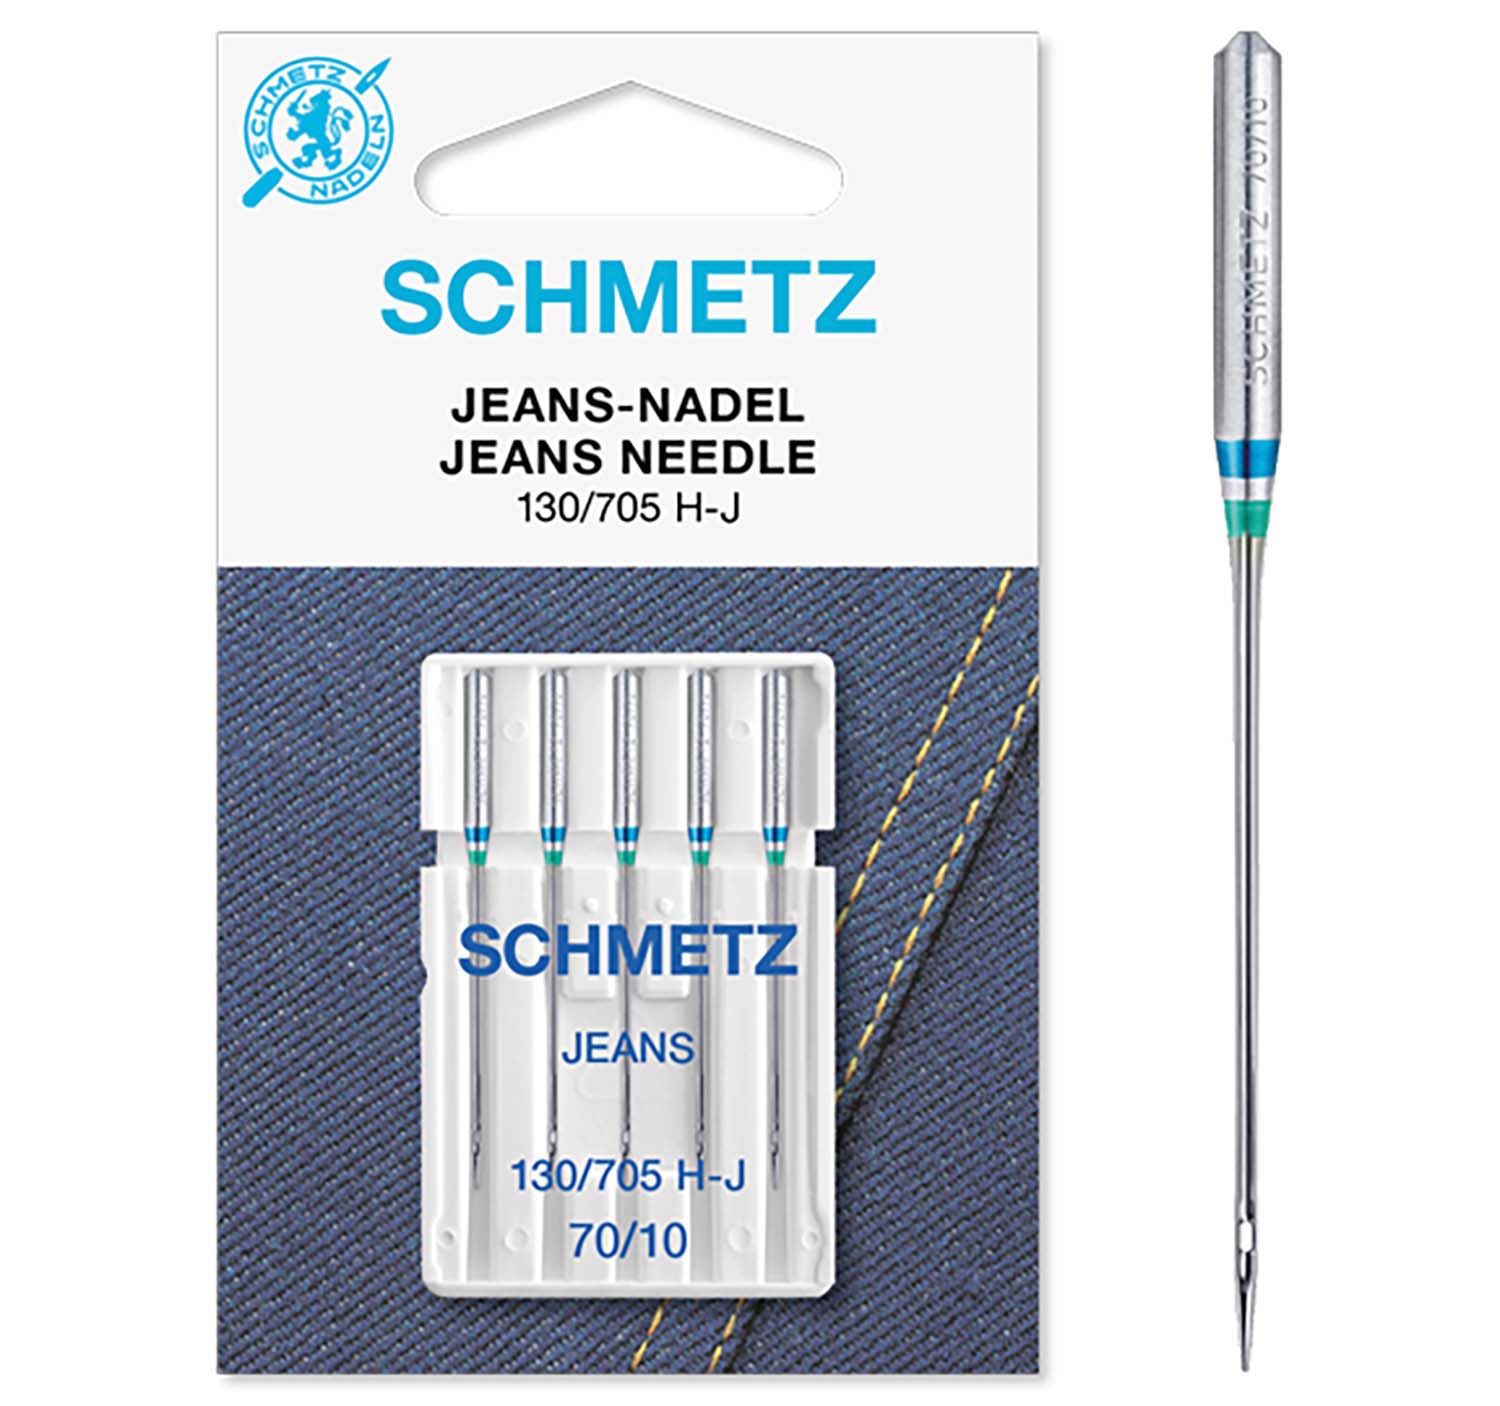 SCHMETZ Nähmaschinennadeln 5 Jeans-Nadeln 130/705 H-J 70/10